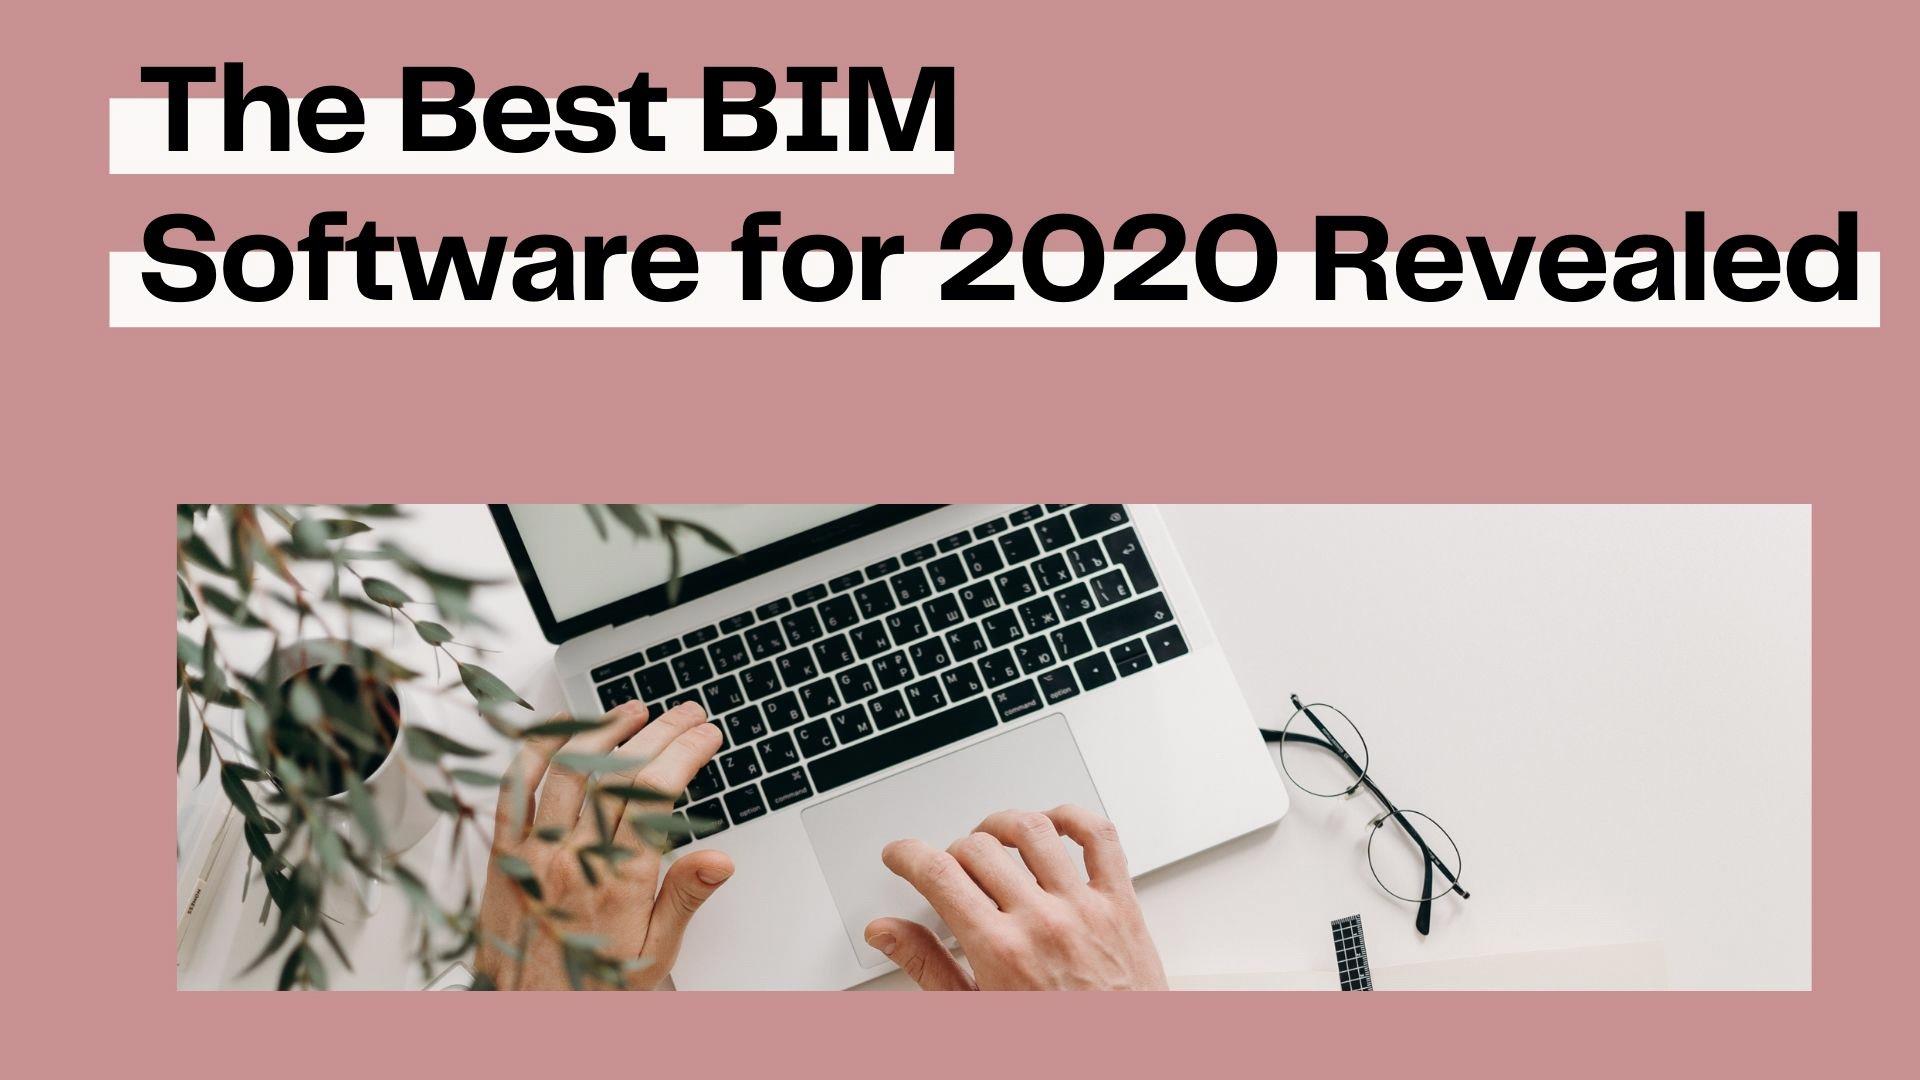 بهترین نرم افزارهای BIM در سال 2020